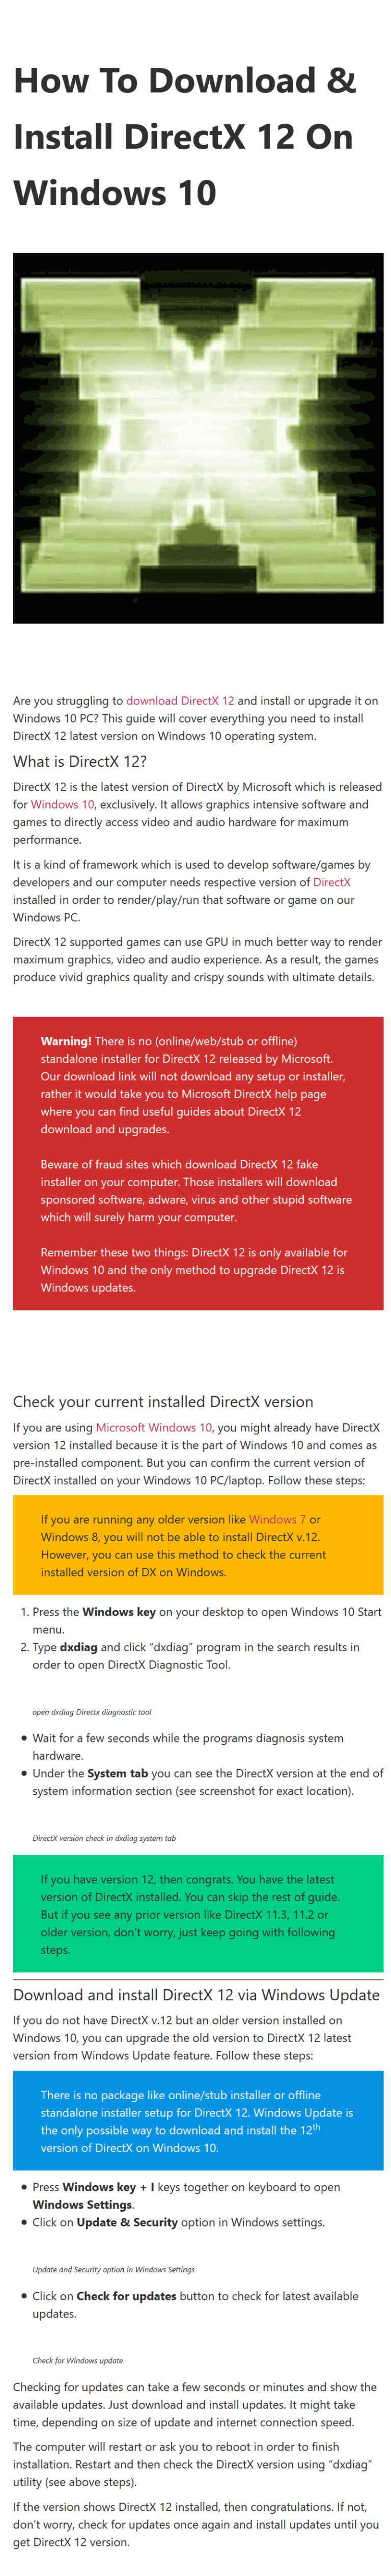 download directx 12 windows 10 64 bit